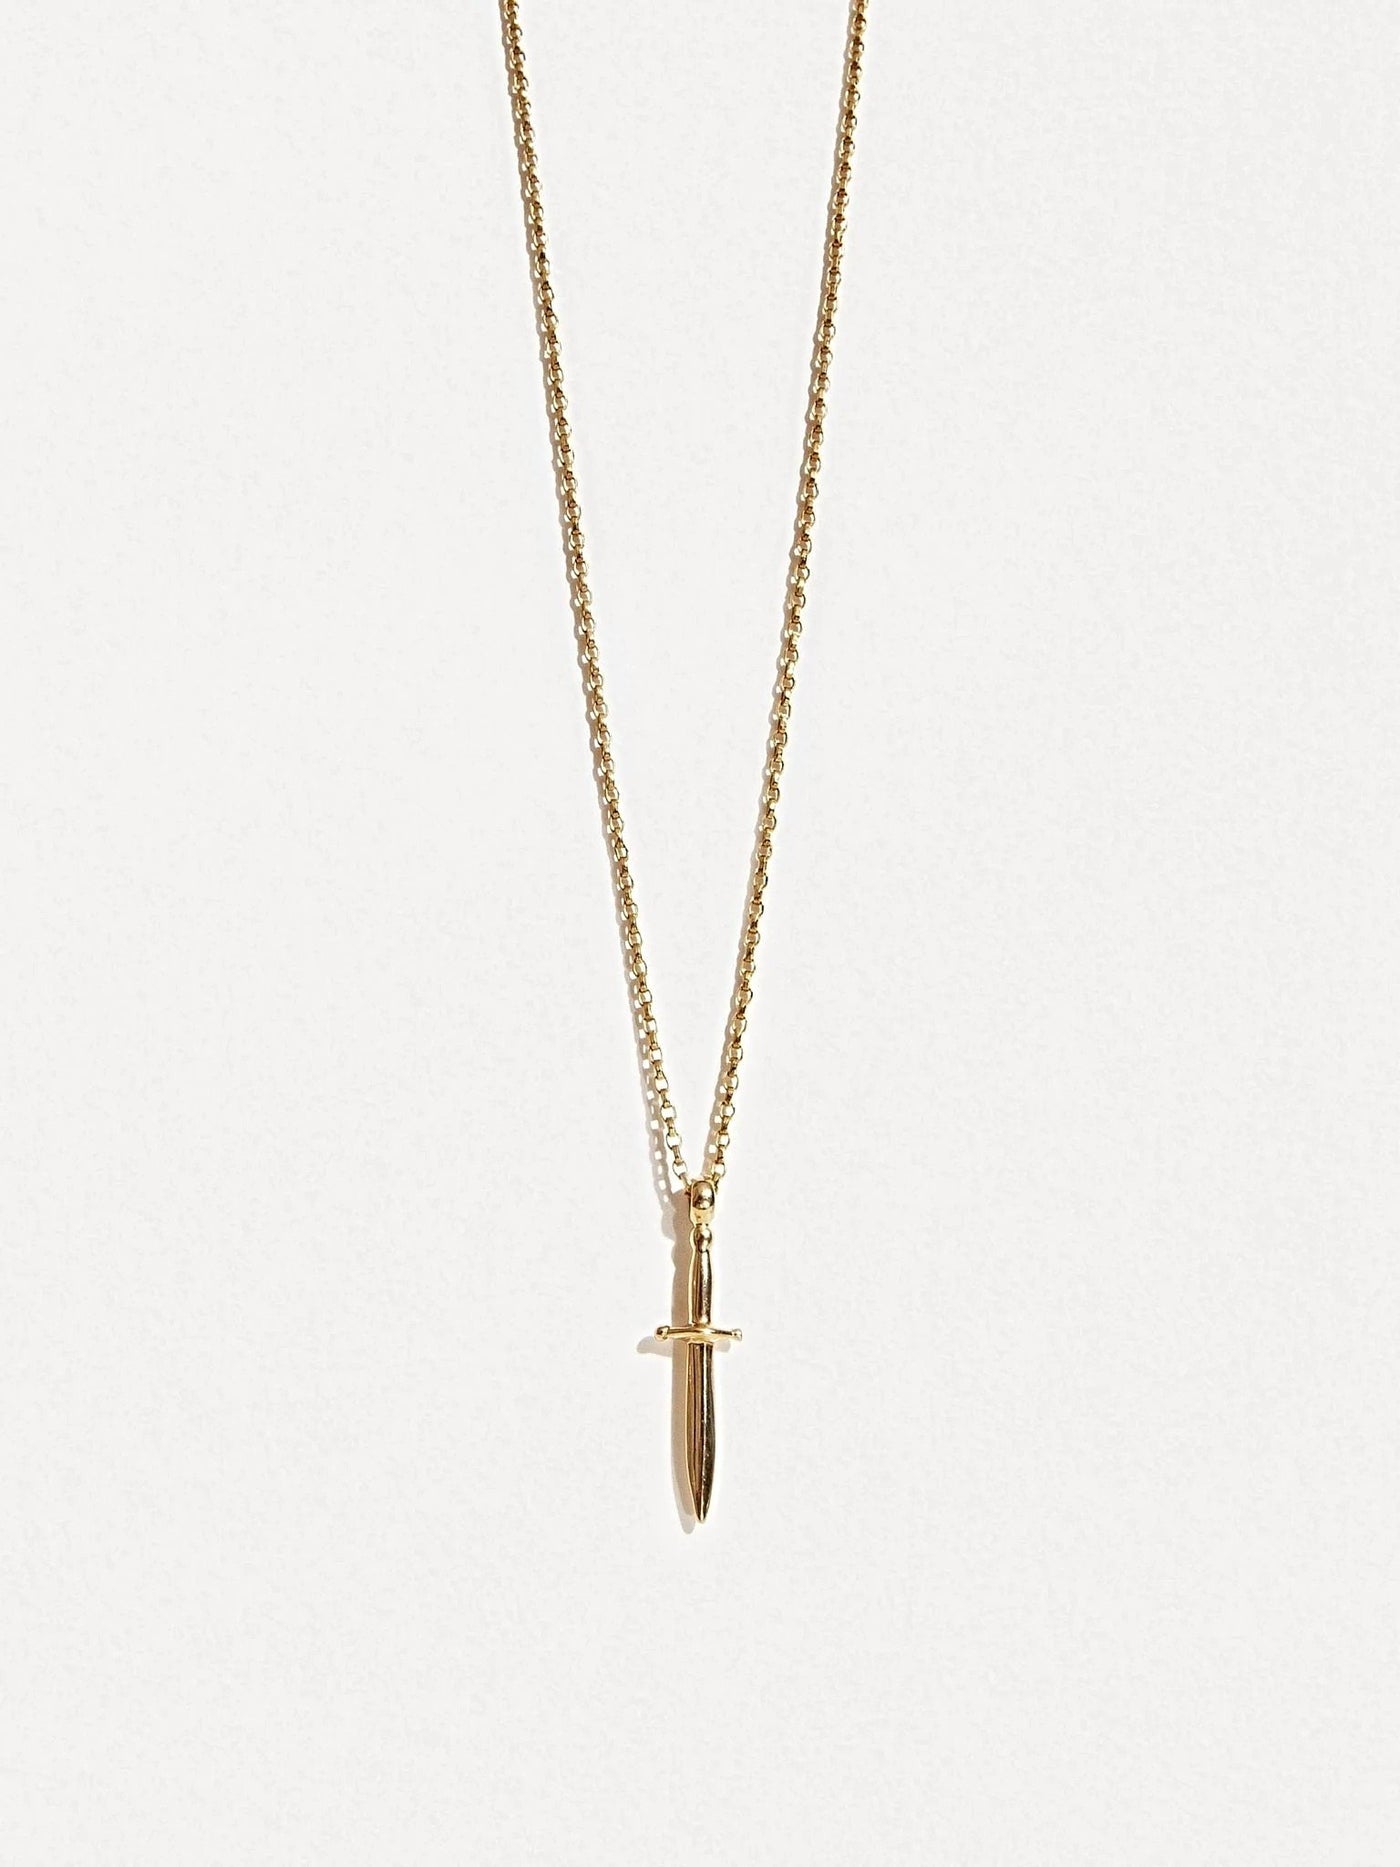 Polyana Dagger Necklace - 15.7St Silver ShinyankorBackUpItemsLunai Jewelry